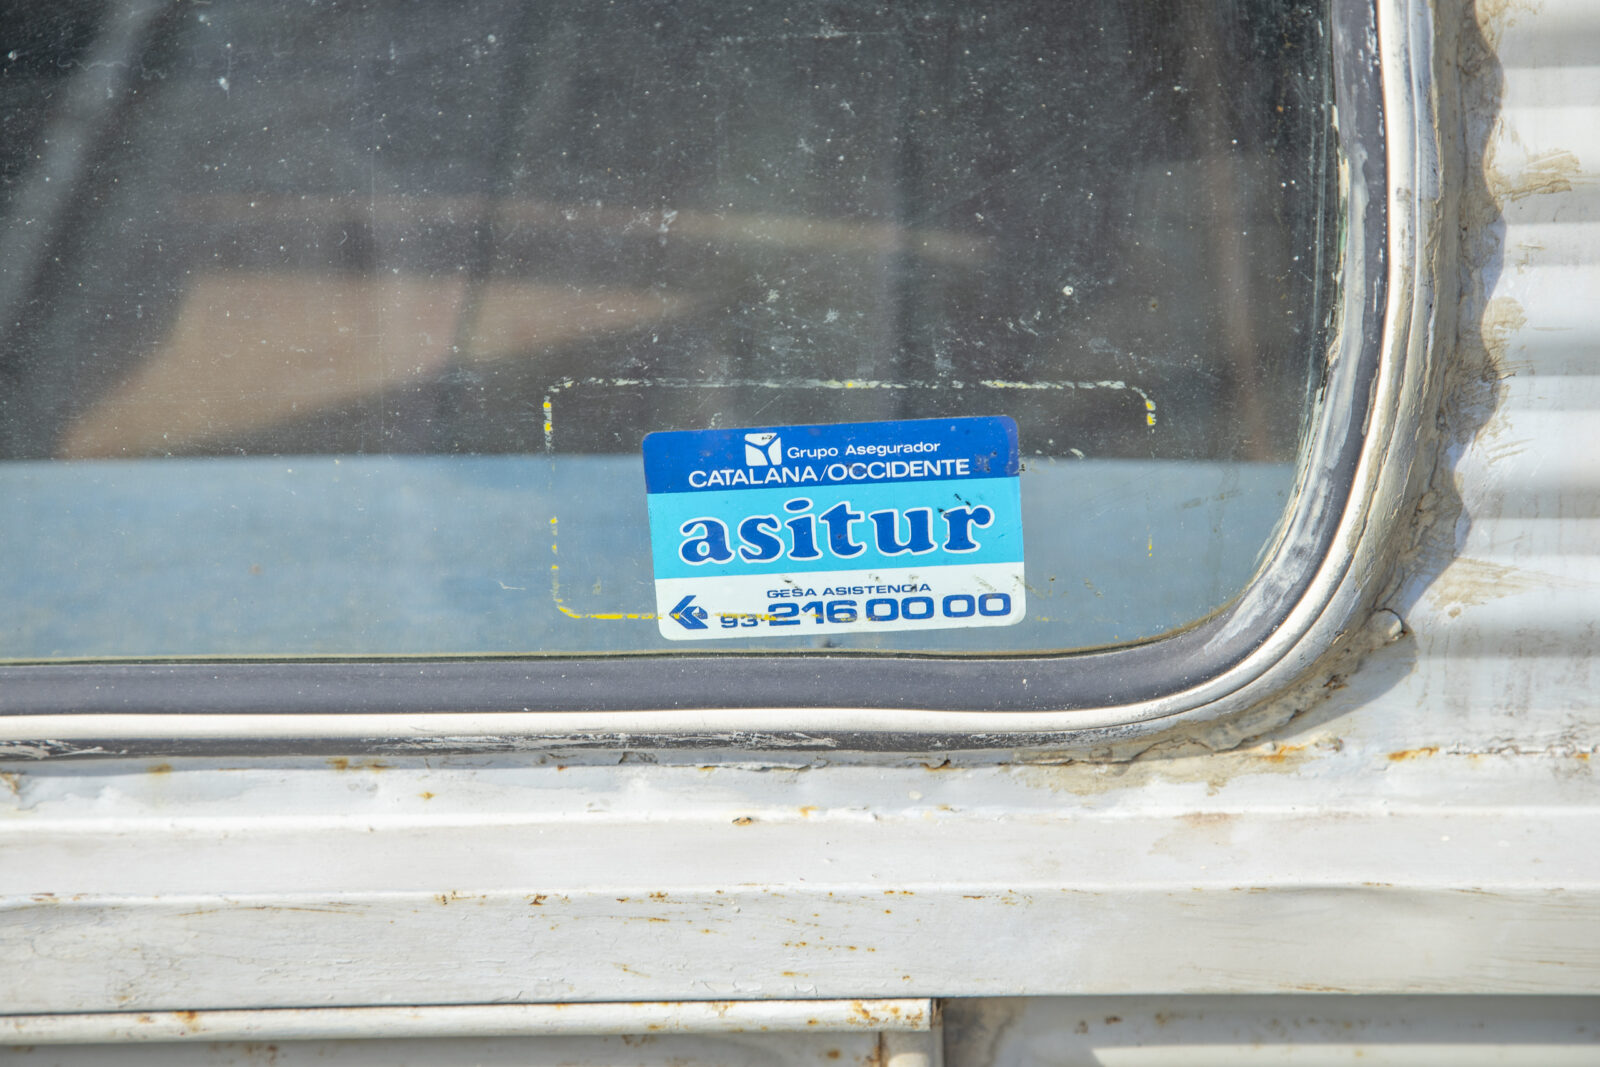 AZU (1966) For sale - windshield sticker closeup